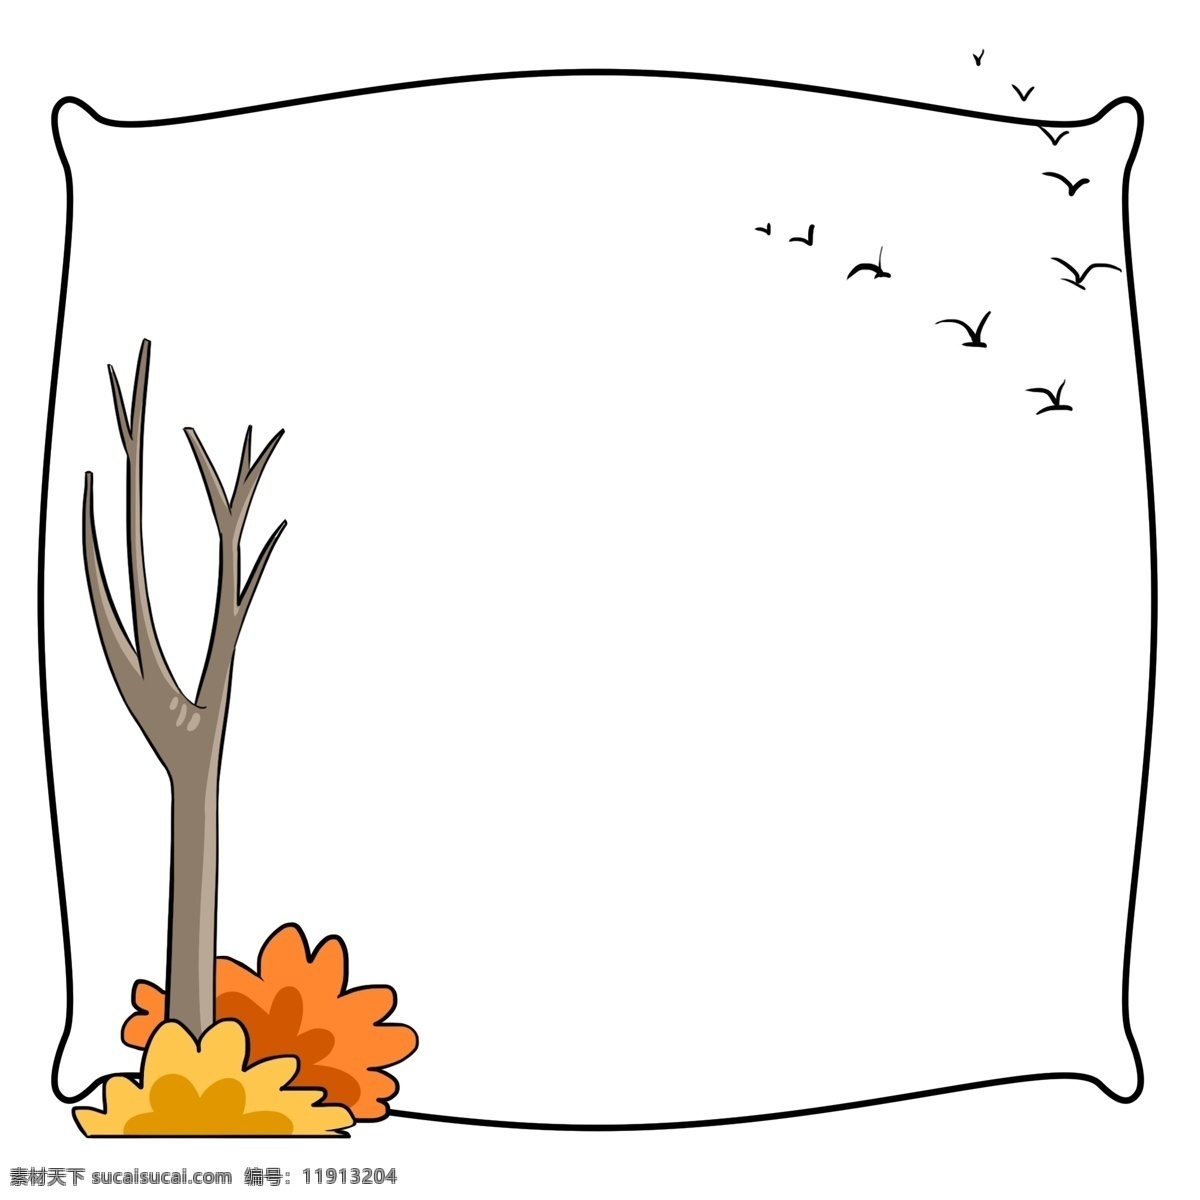 霜降 树干 落叶 边框 插画 手绘 秋季 秋风